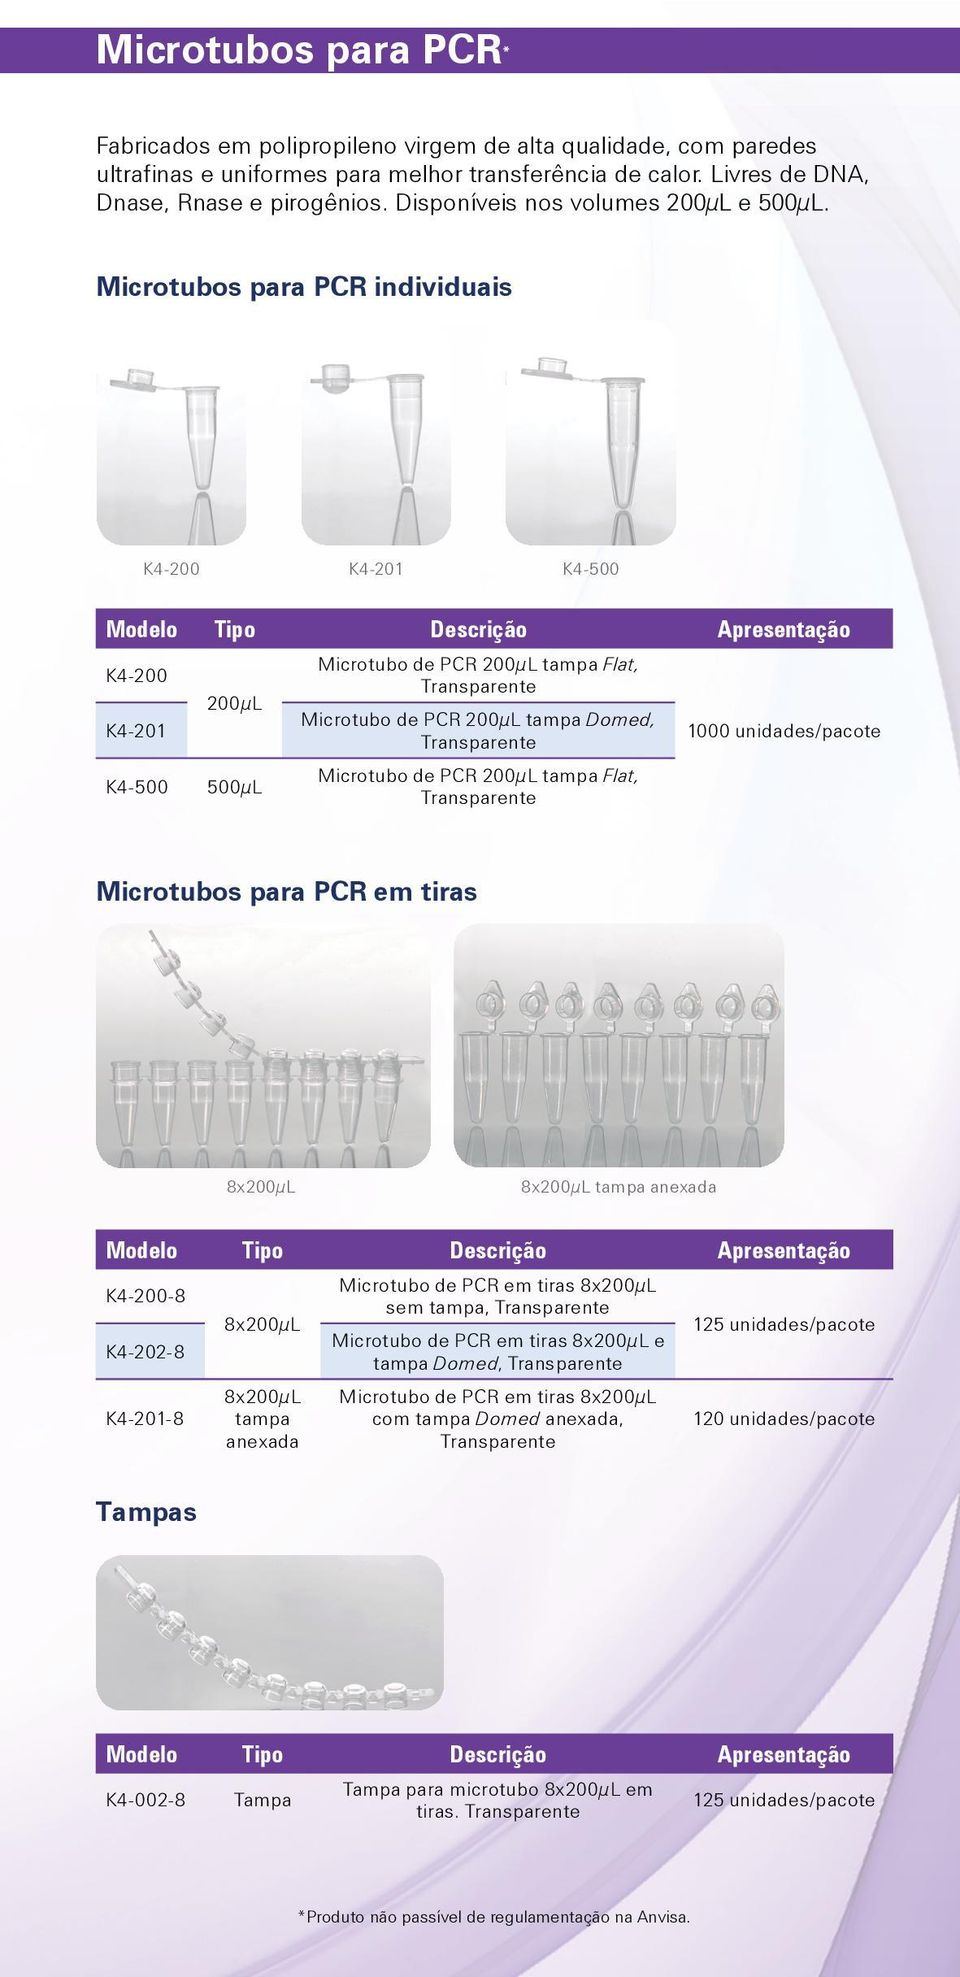 Microtubos para PCR individuais K4-200 K4-201 K4-500 Modelo Tipo Descrição Apresentação K4-200 K4-201 200µL K4-500 500µL Microtubo de PCR 200µL tampa Flat, Transparente Microtubo de PCR 200µL tampa